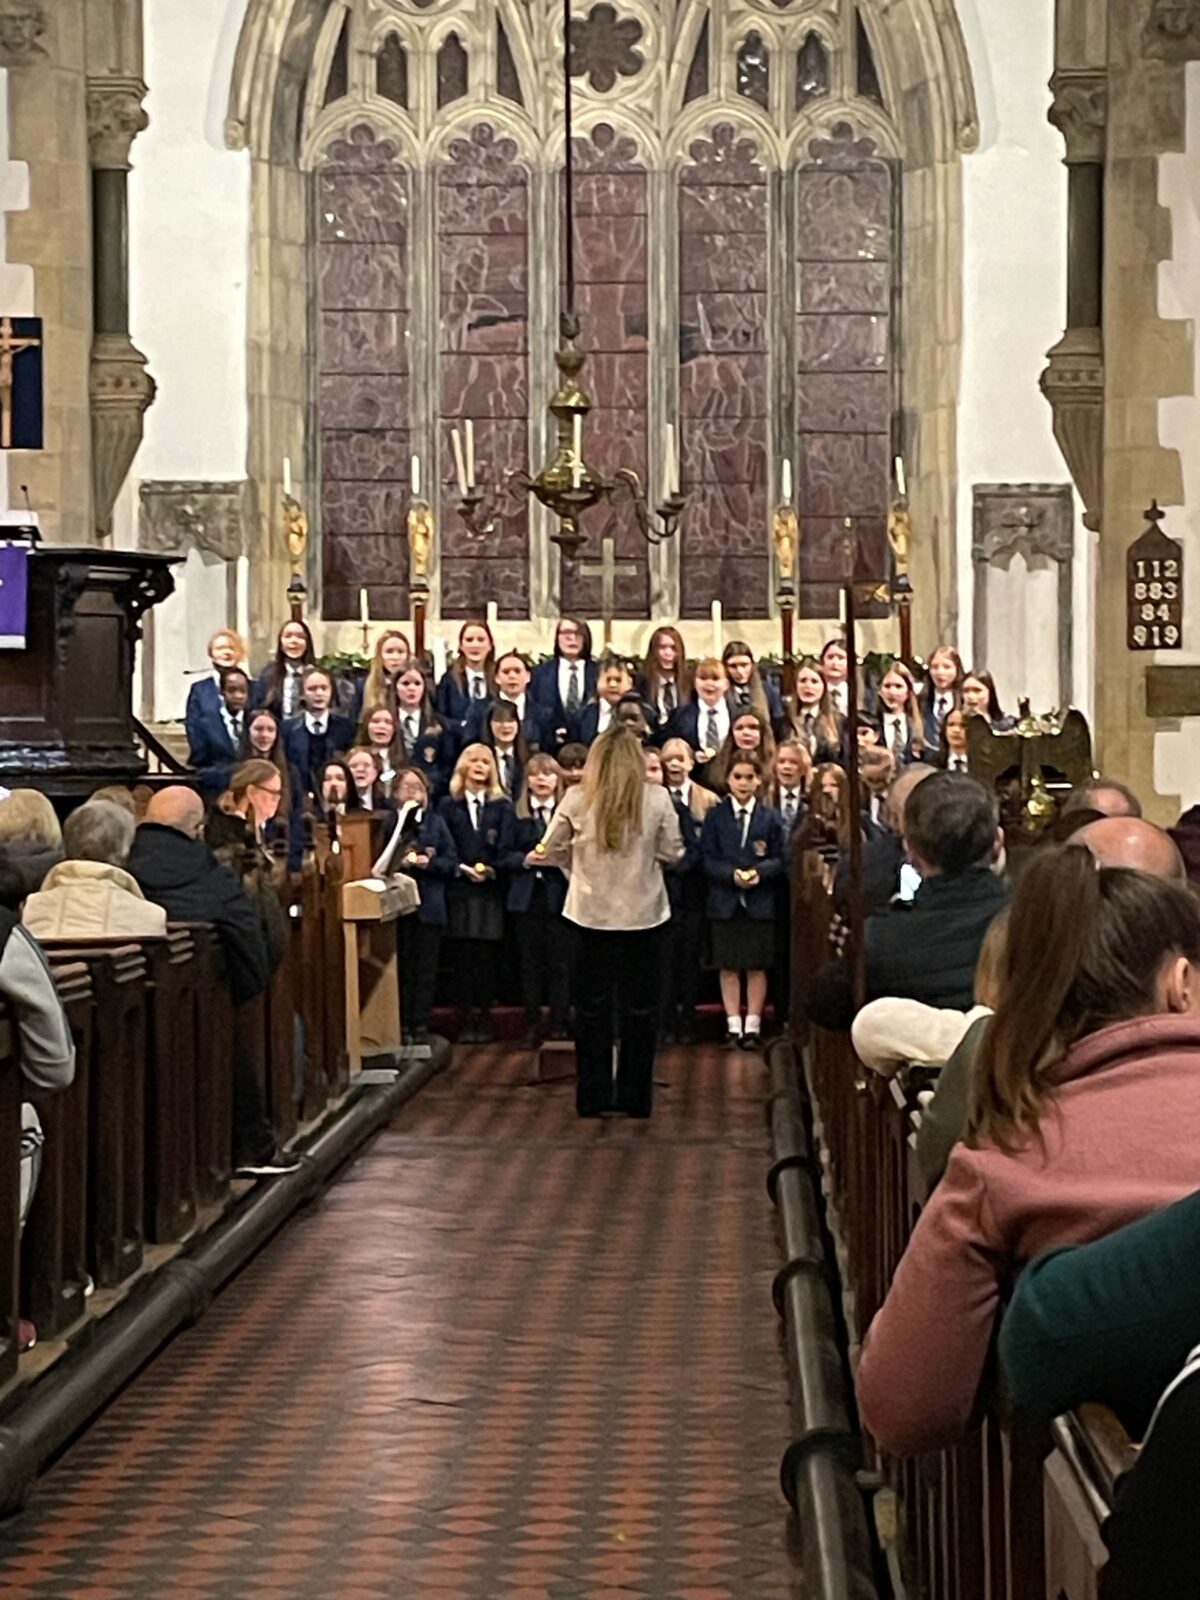 Choir in full force at the Ysgol Rhiwabon Christmas carol concert.